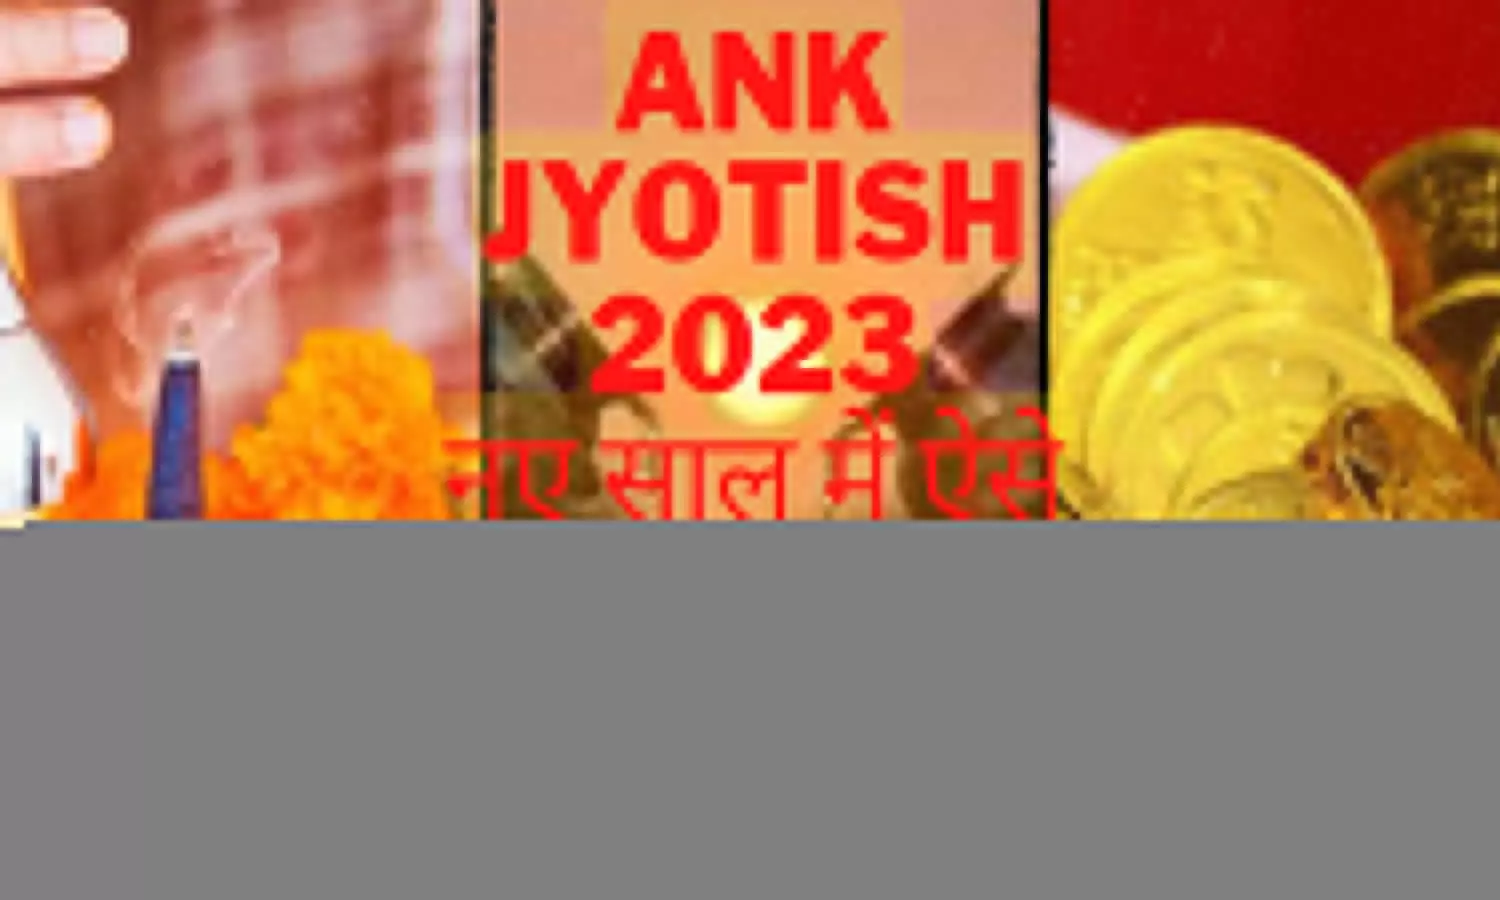 Ank Jyotish 2023 Pahle January Ko Kare Upay